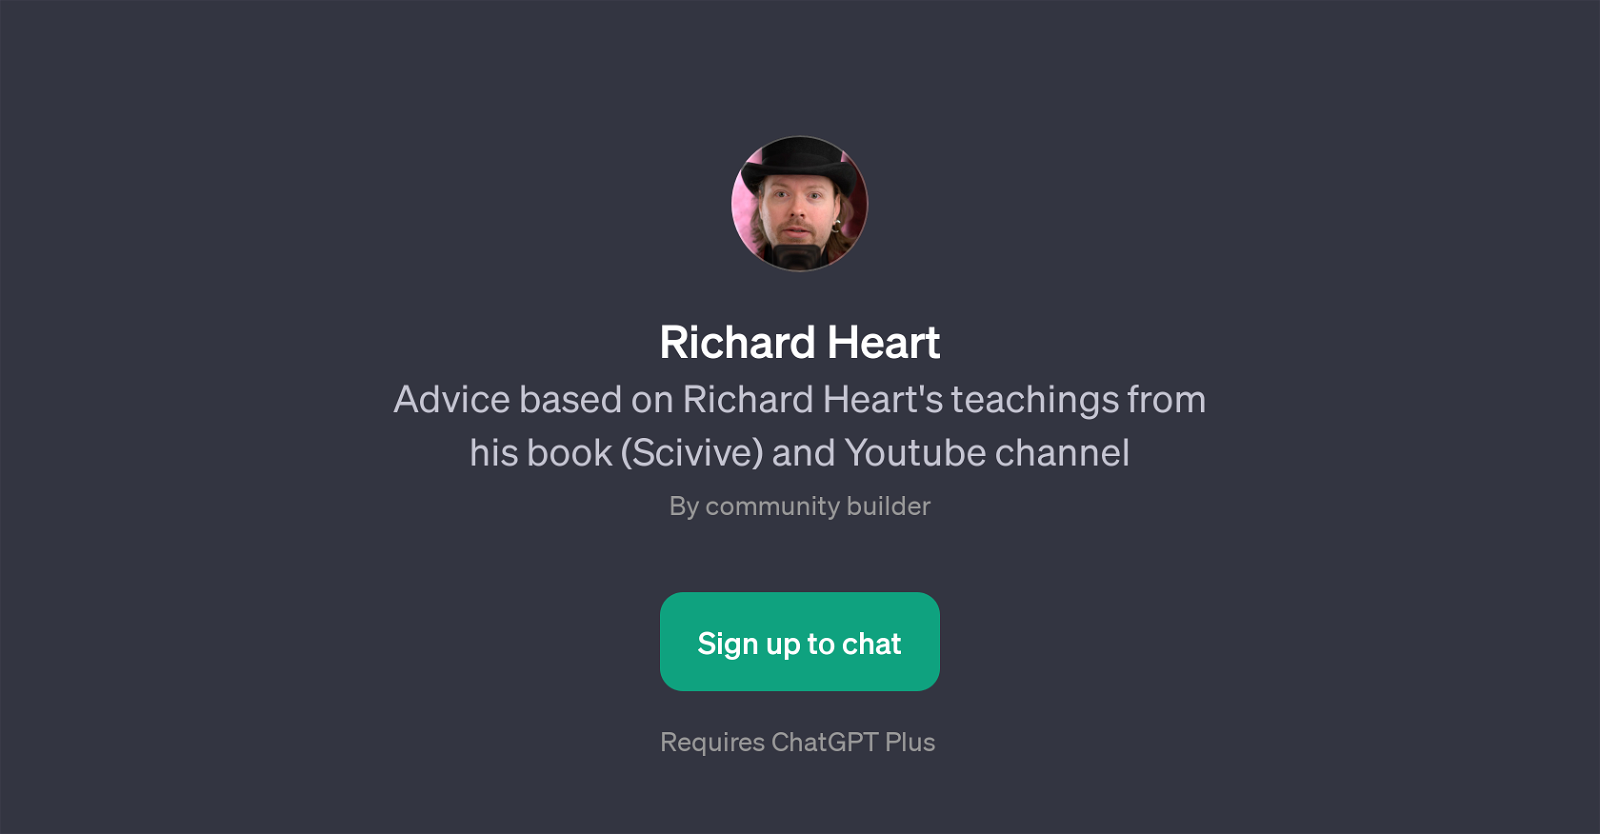 Richard Heart website